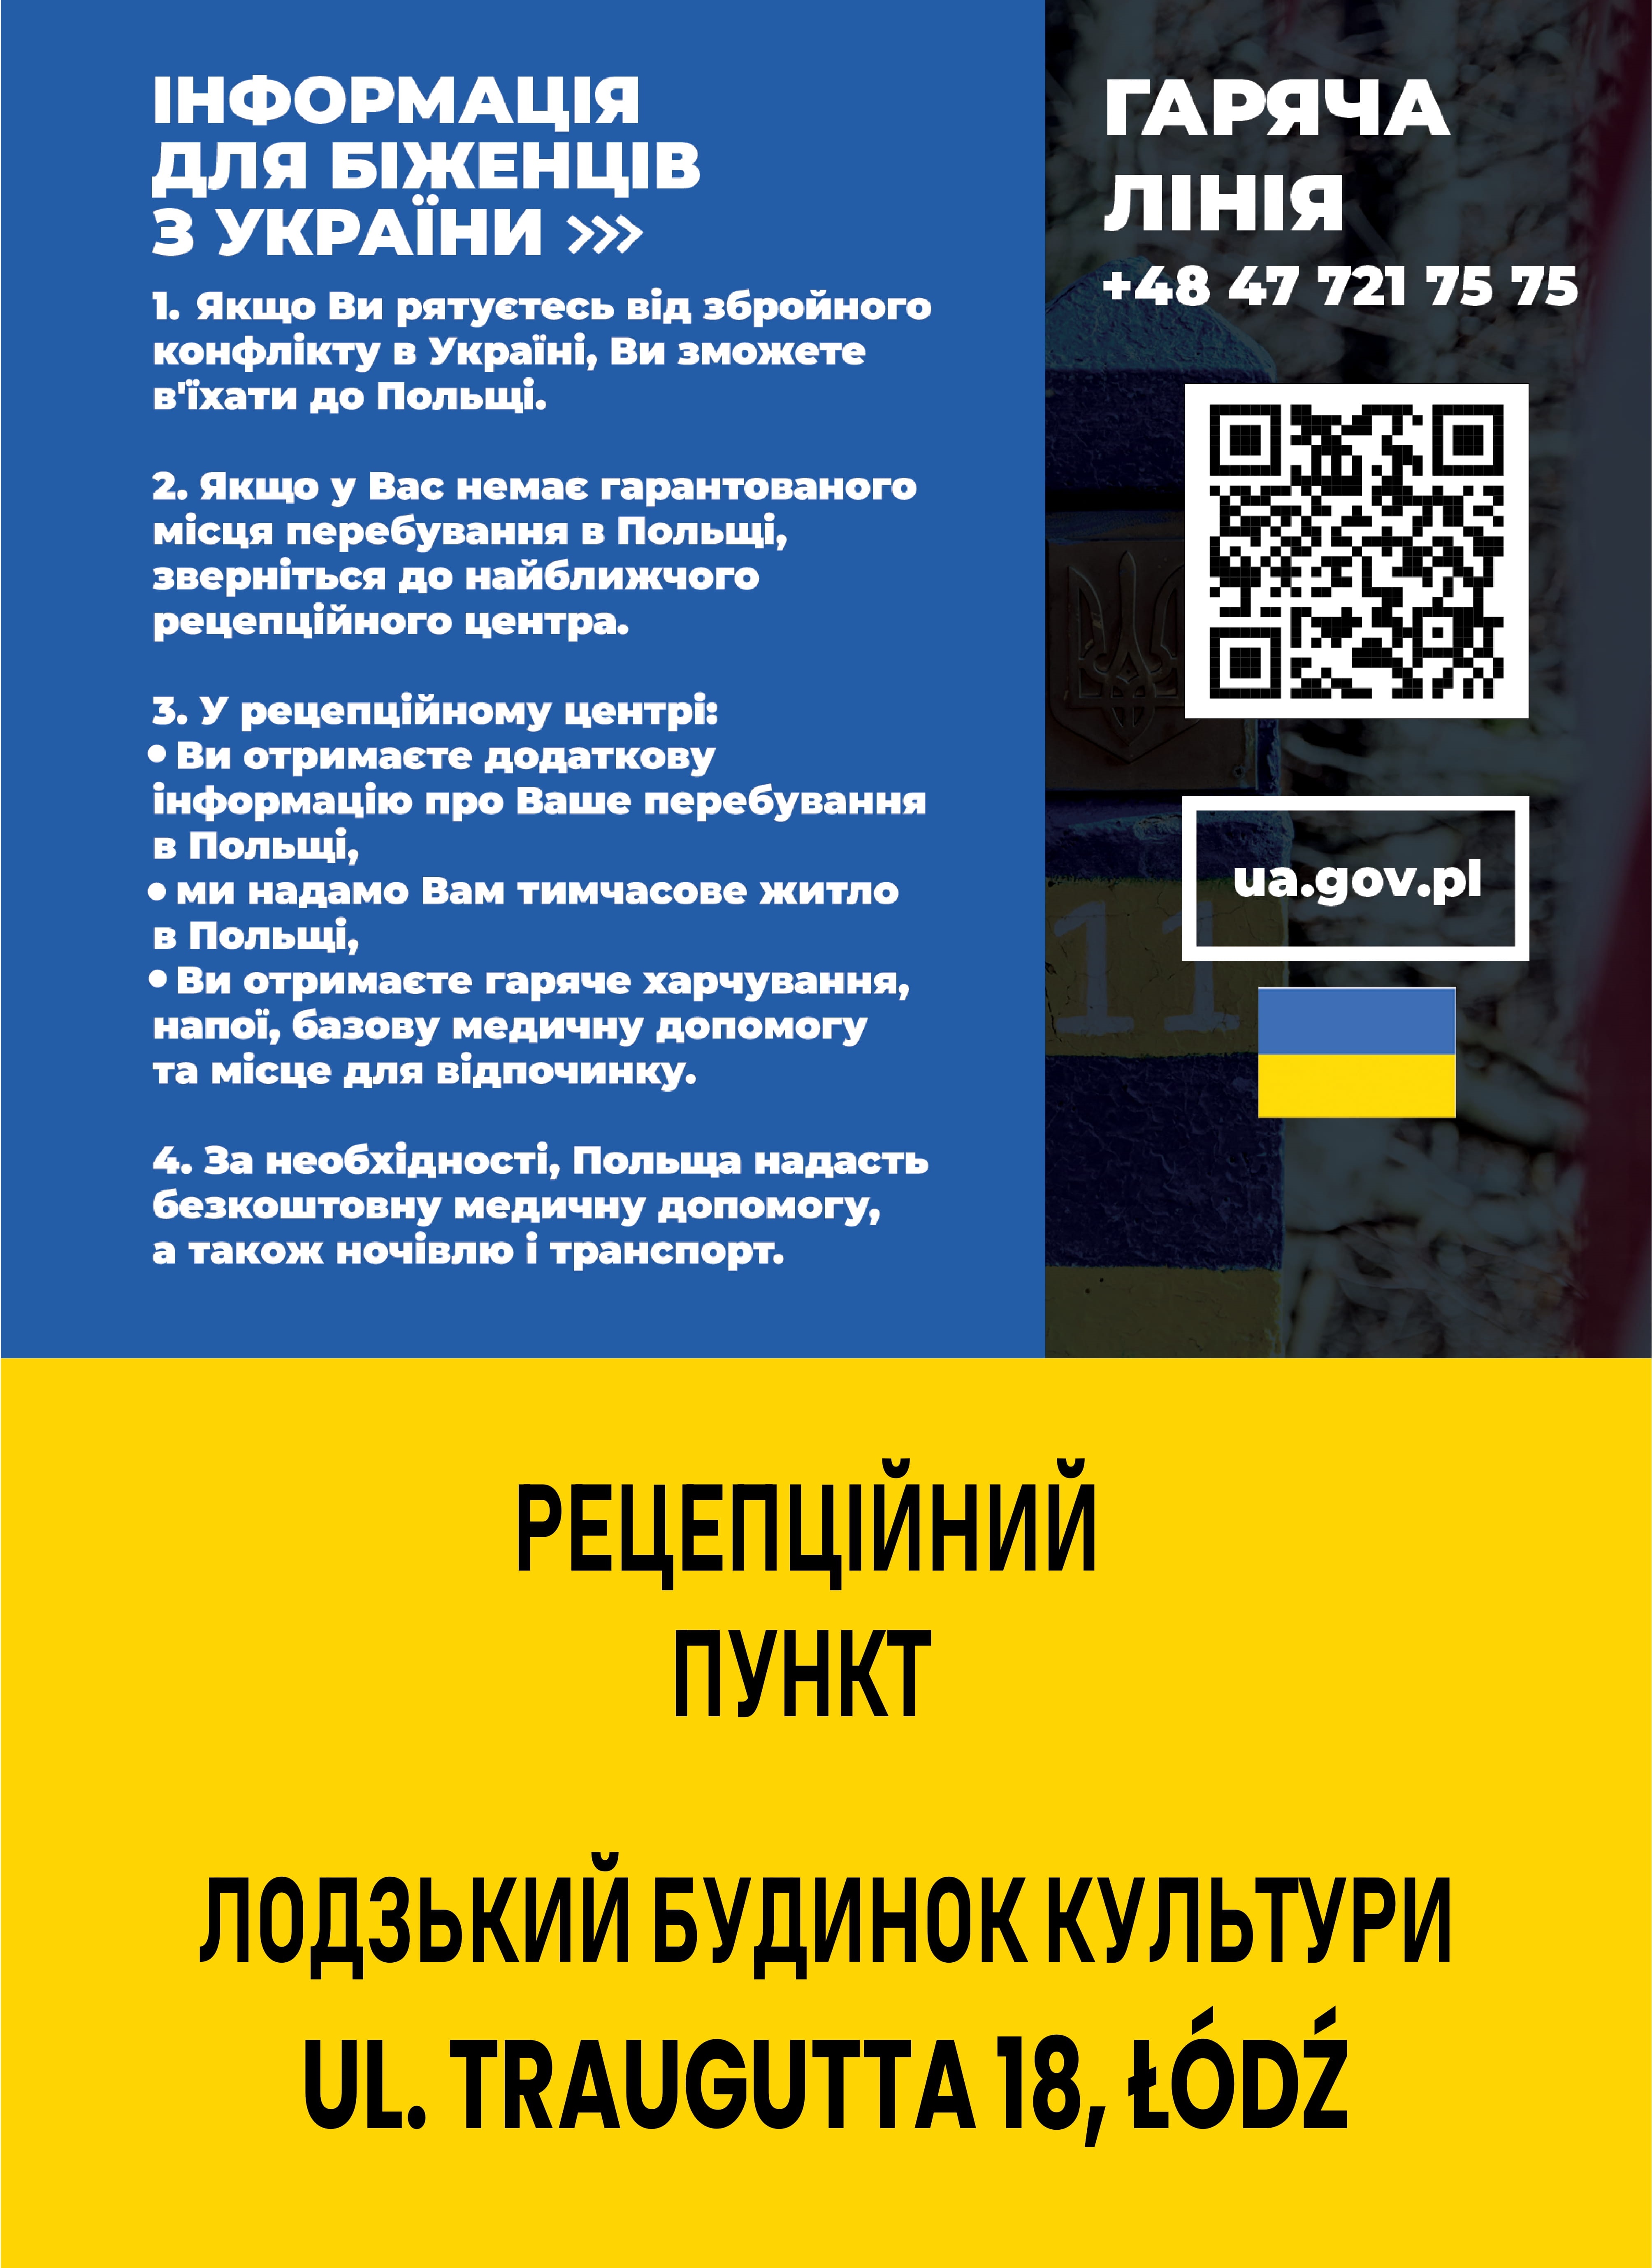 informacja dla uchodźców z ukrainyu1